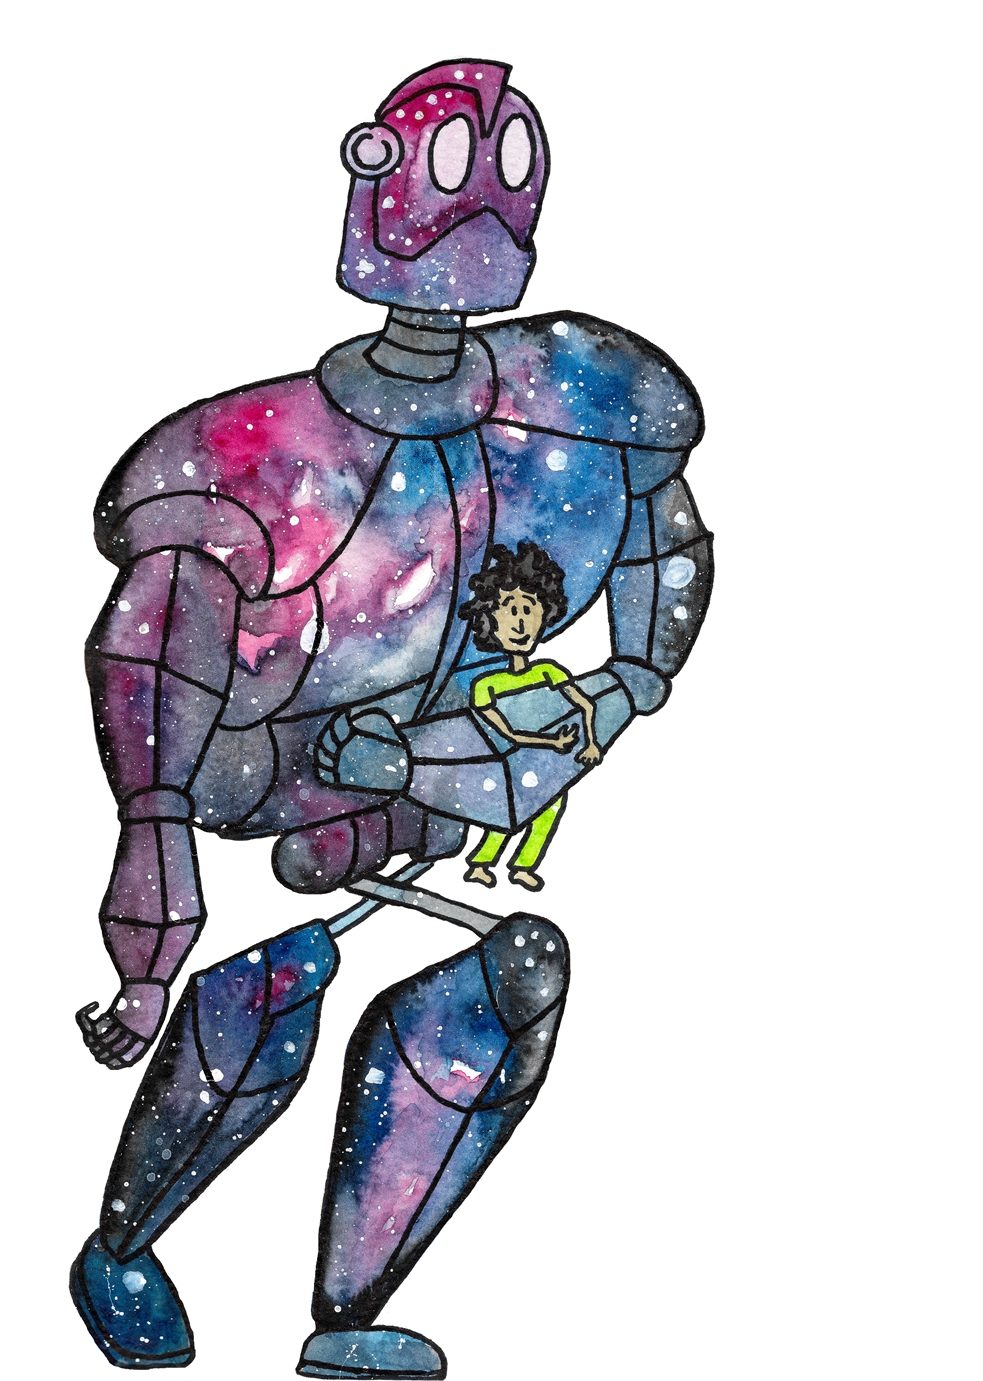 Aquarellbild eines Roboters in den Farben Blau und Violett, der einen Jungen in seinen Armen trägt